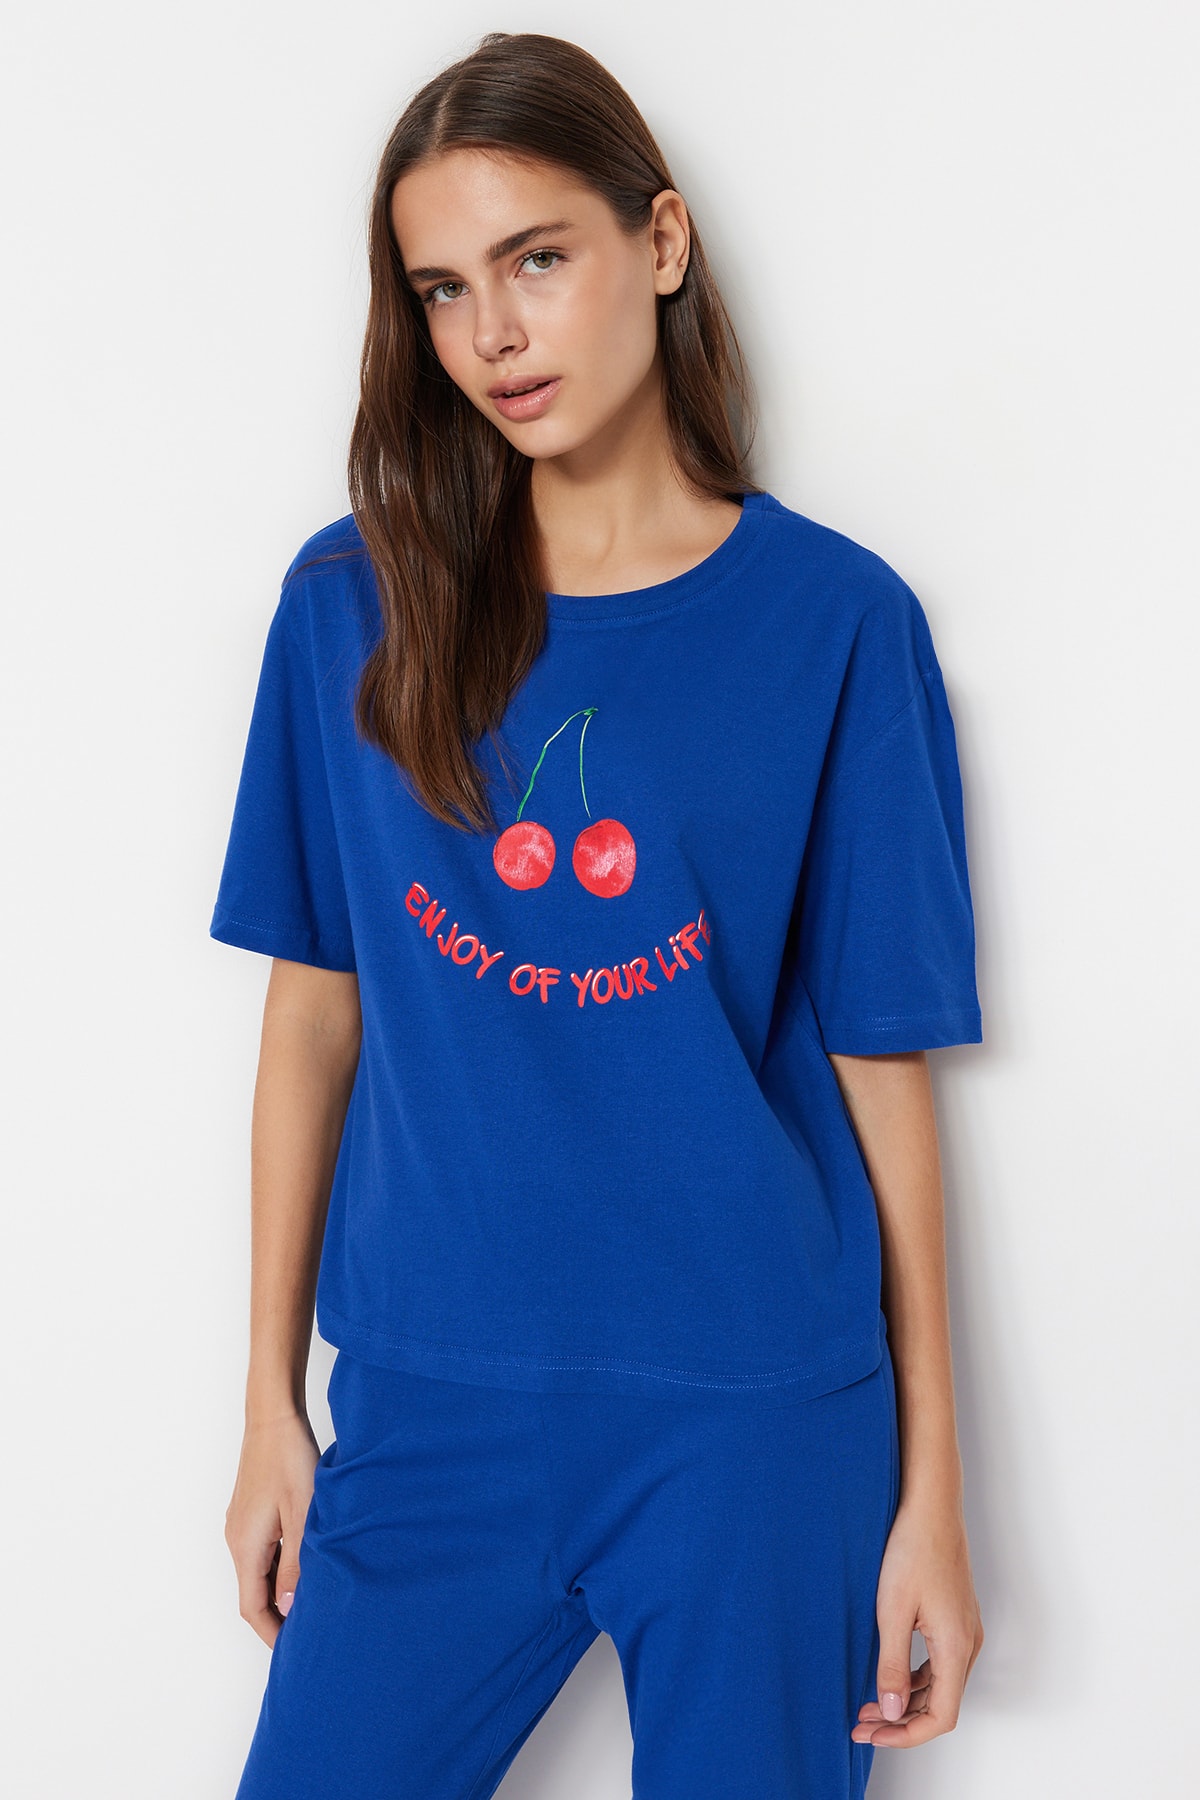 Trendyol Navy Blue 100% Cotton Fruit Printed T-shirt-Pants Knitted Pajamas Set